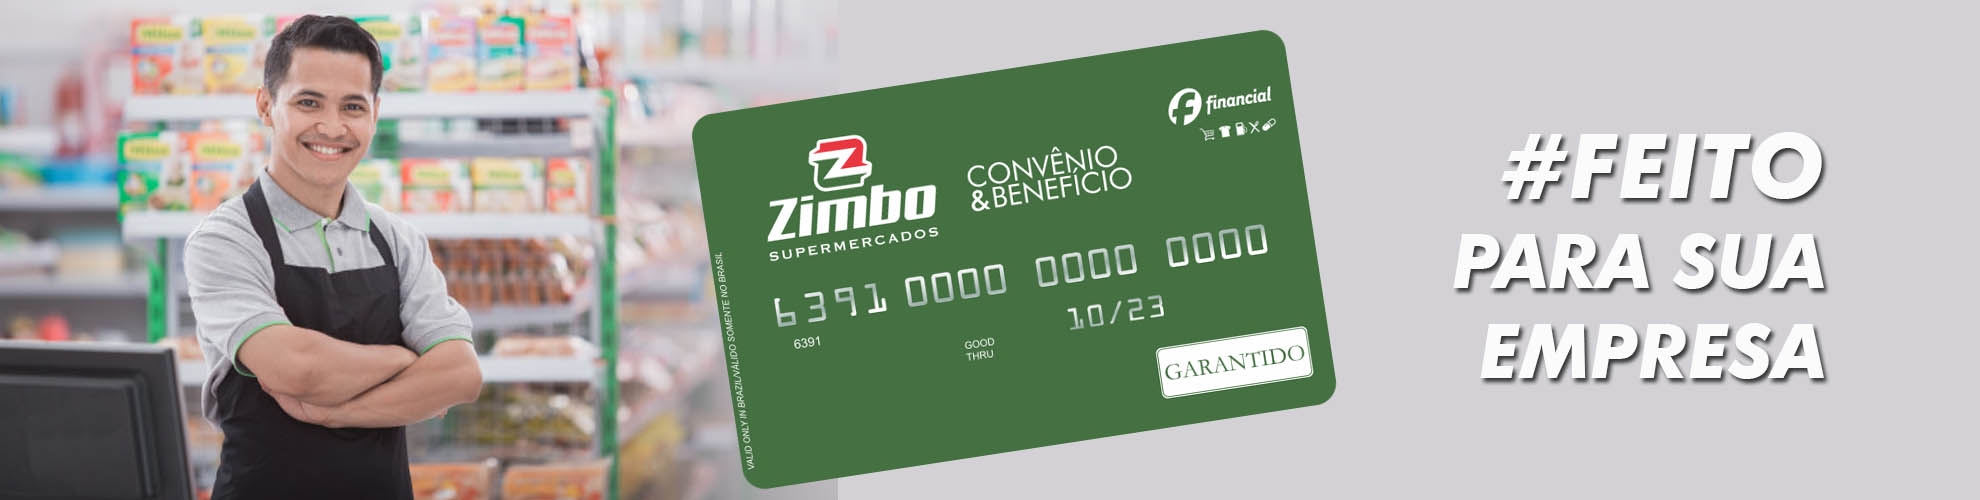 Cartão Convênio e Benefício Zimbo